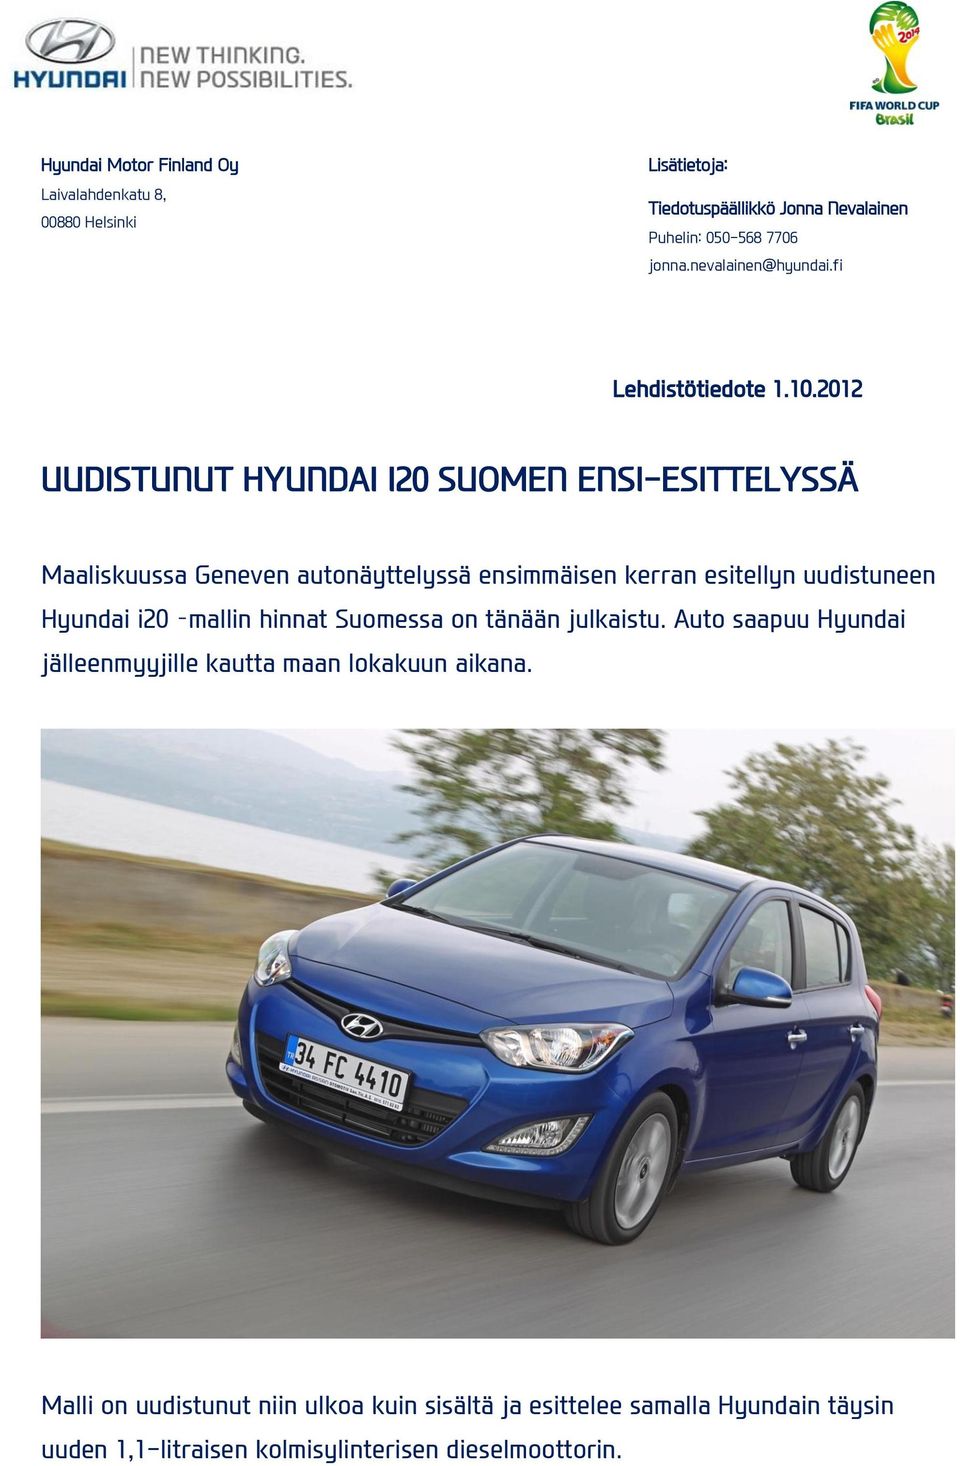 2012 UUDISTUNUT HYUNDAI I20 SUOMEN ENSI-ESITTELYSSÄ Maaliskuussa Geneven autonäyttelyssä ensimmäisen kerran esitellyn uudistuneen Hyundai i20